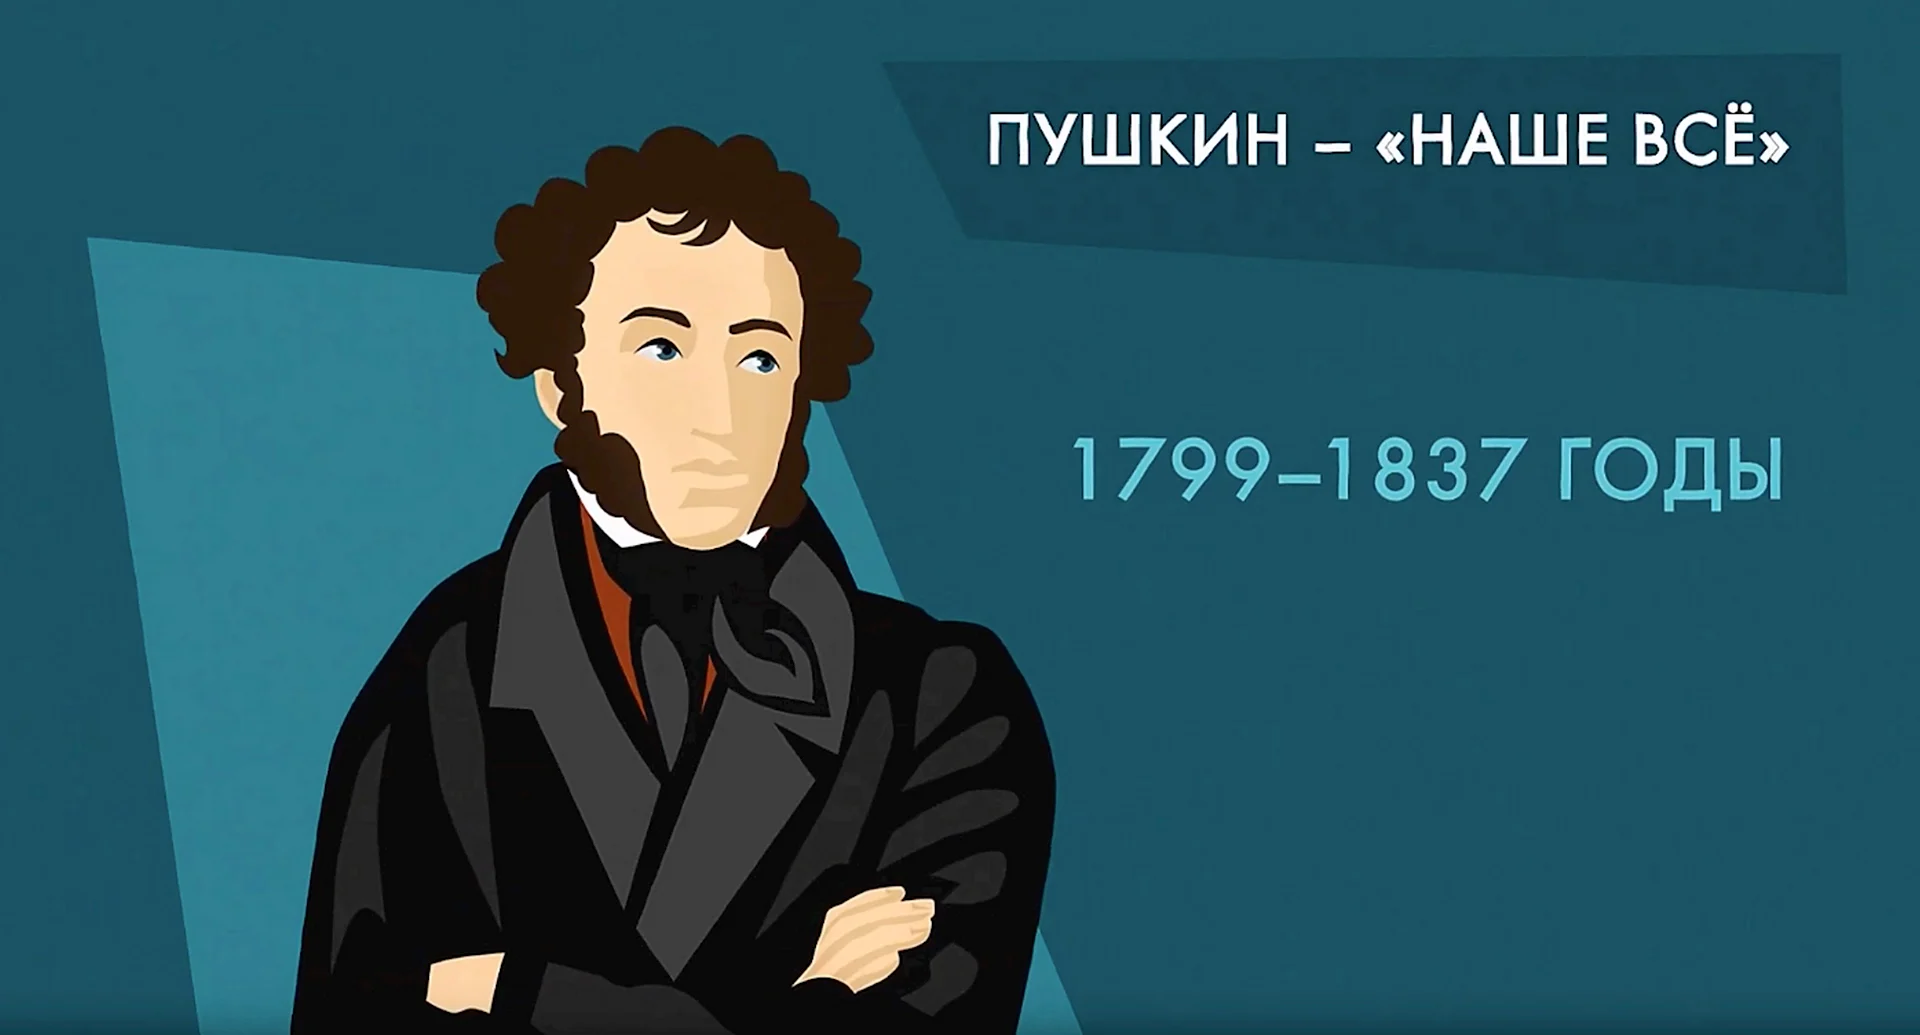 Пушкин современный